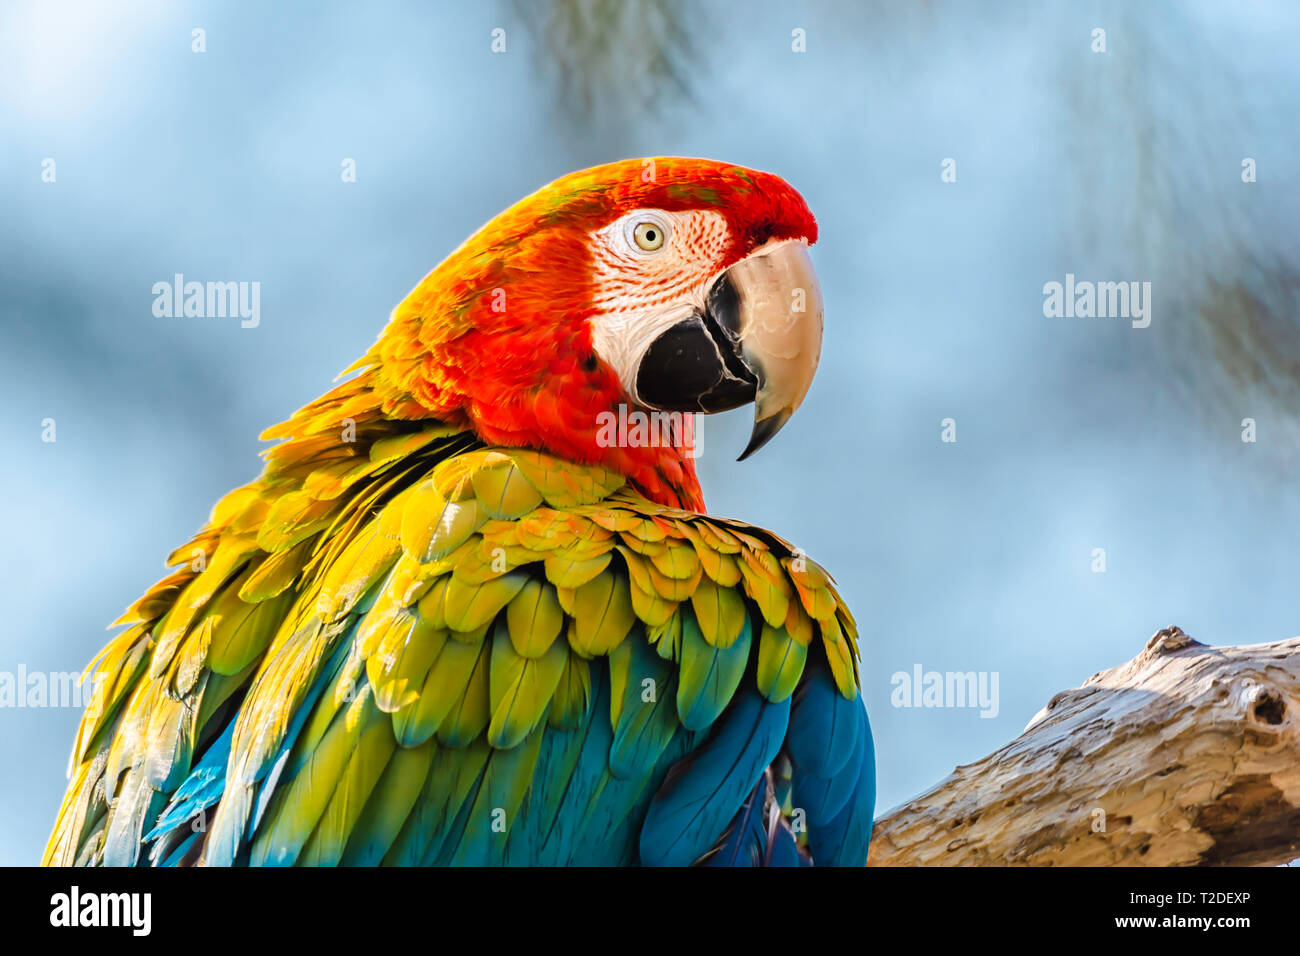 Hellrote ara Papagei hocken auf Zweig und Suchen in der Kamera. Unscharfe blauen Himmel im Hintergrund. Schöne, große und bunte tropische Vogel. Tierwelt. Stockfoto